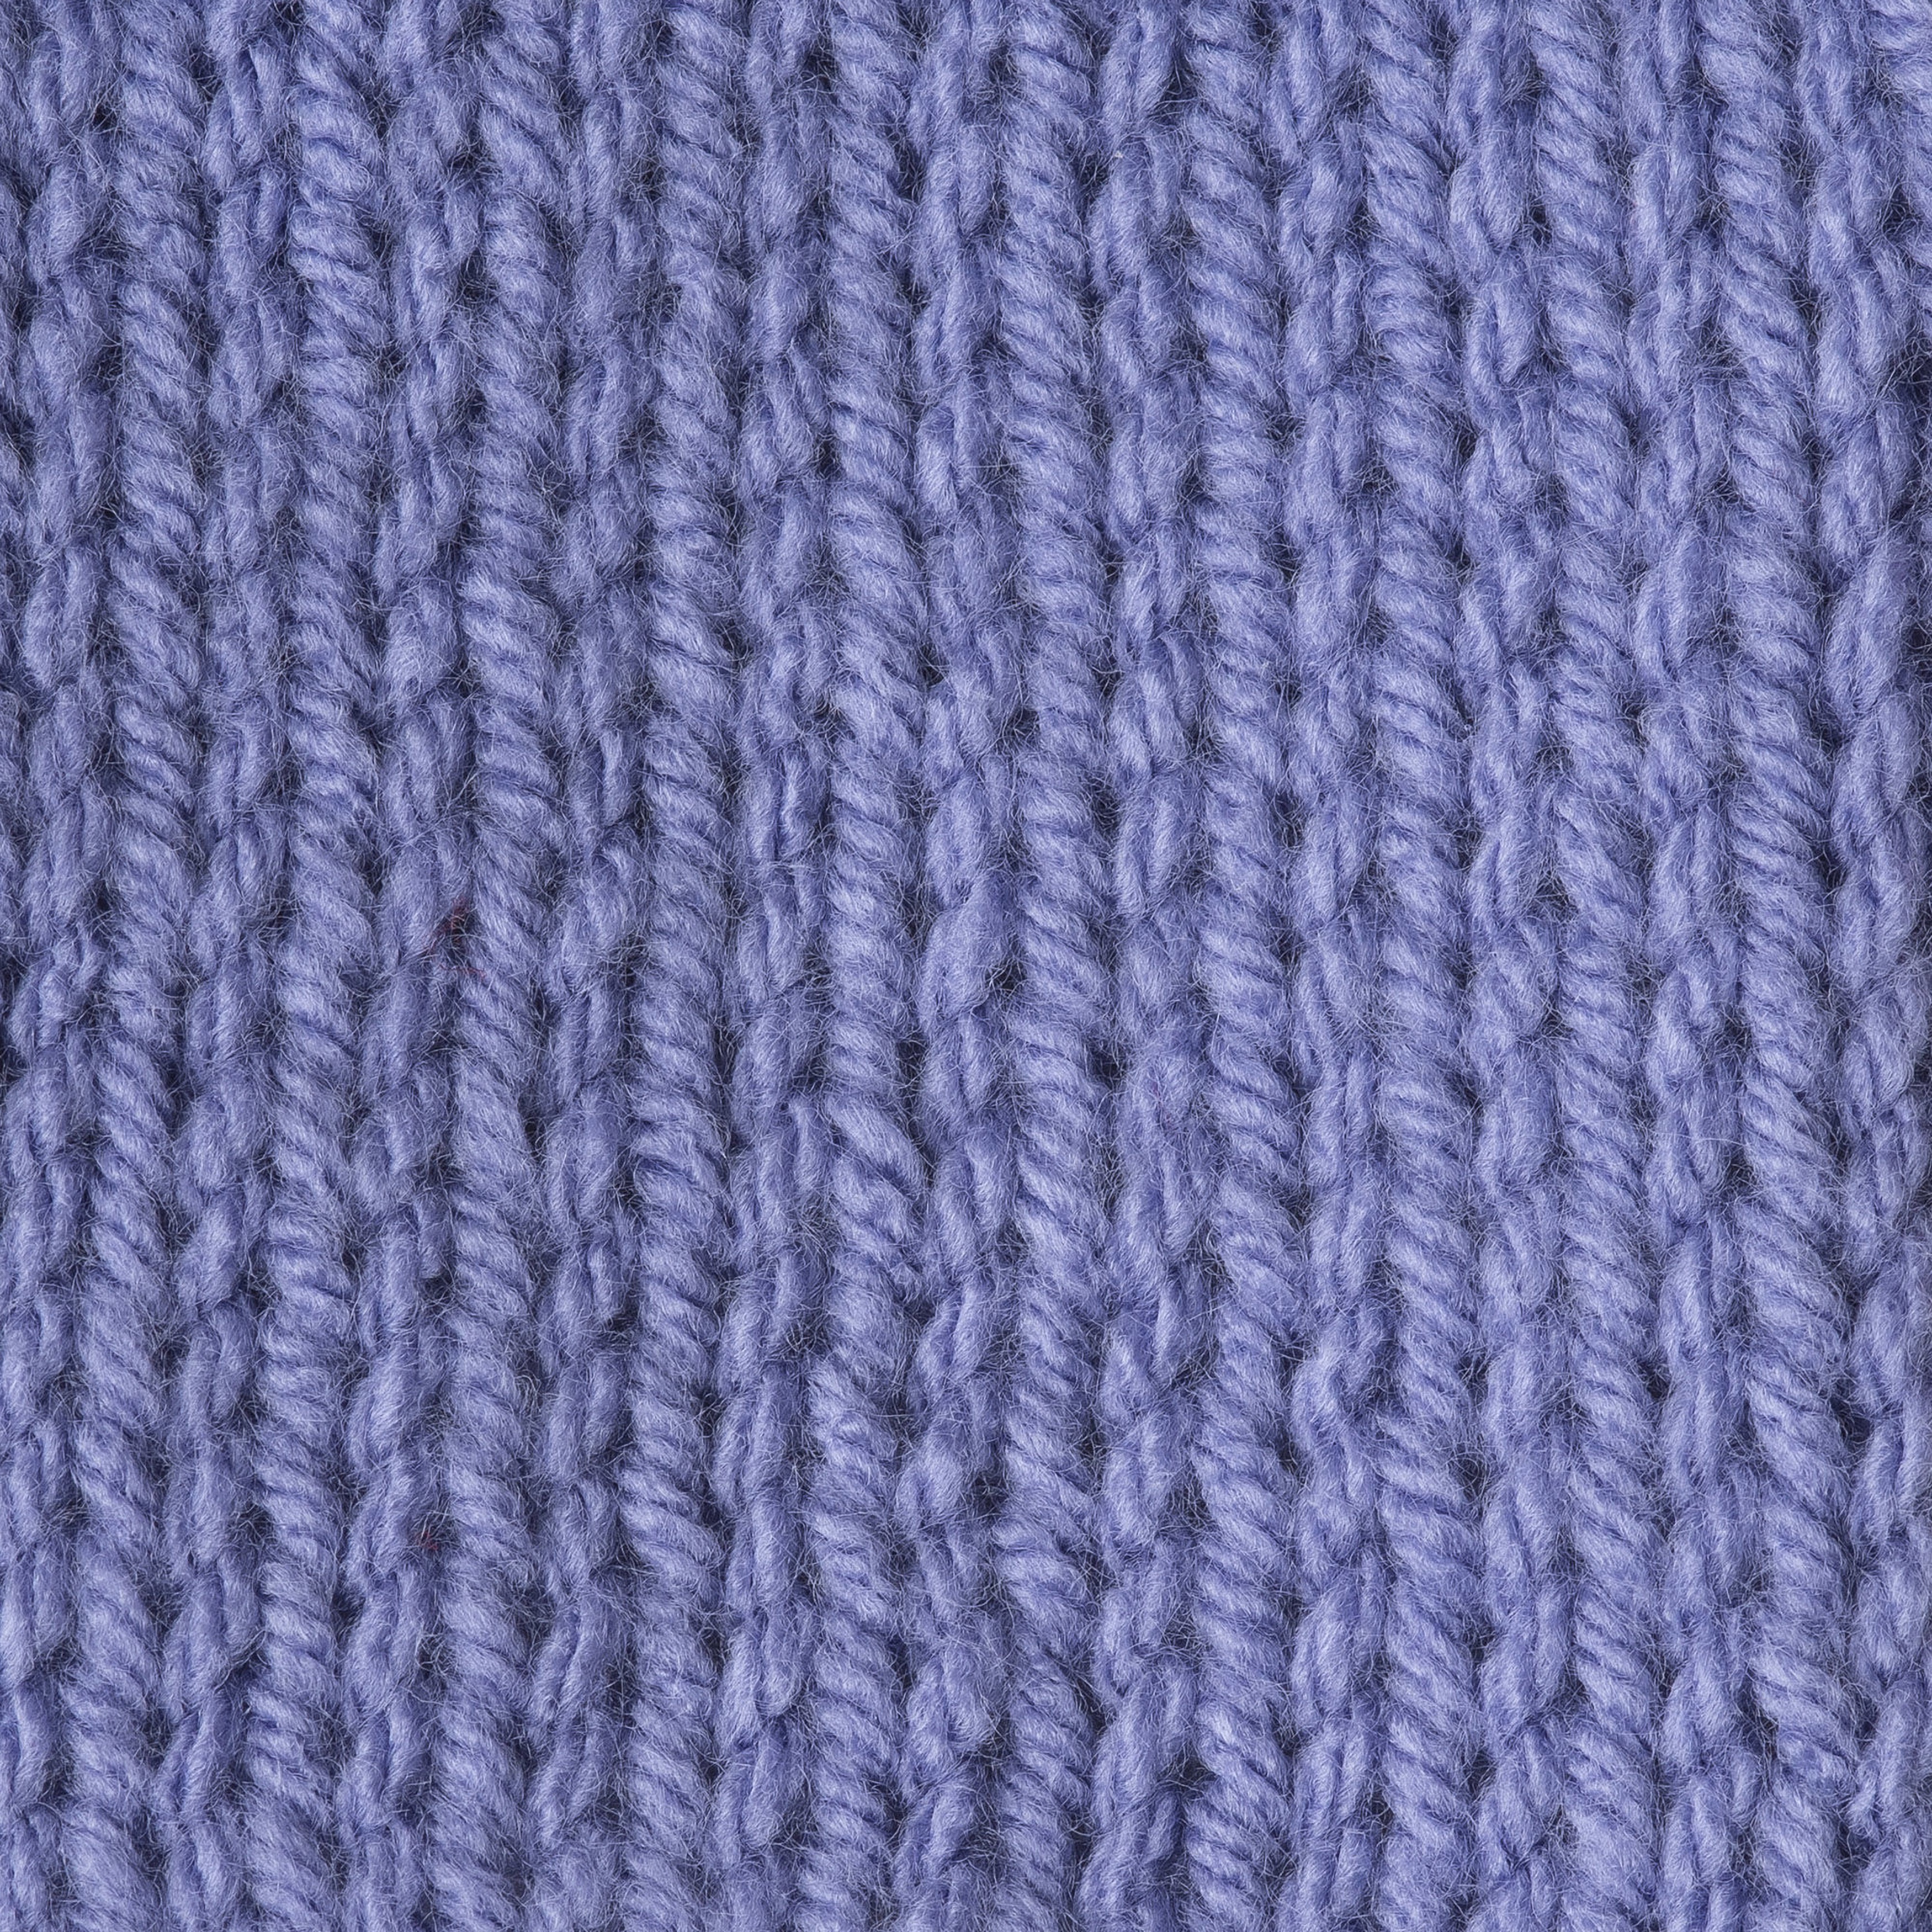 Spinrite-Caron One Pound Yarn-Lavender Blue